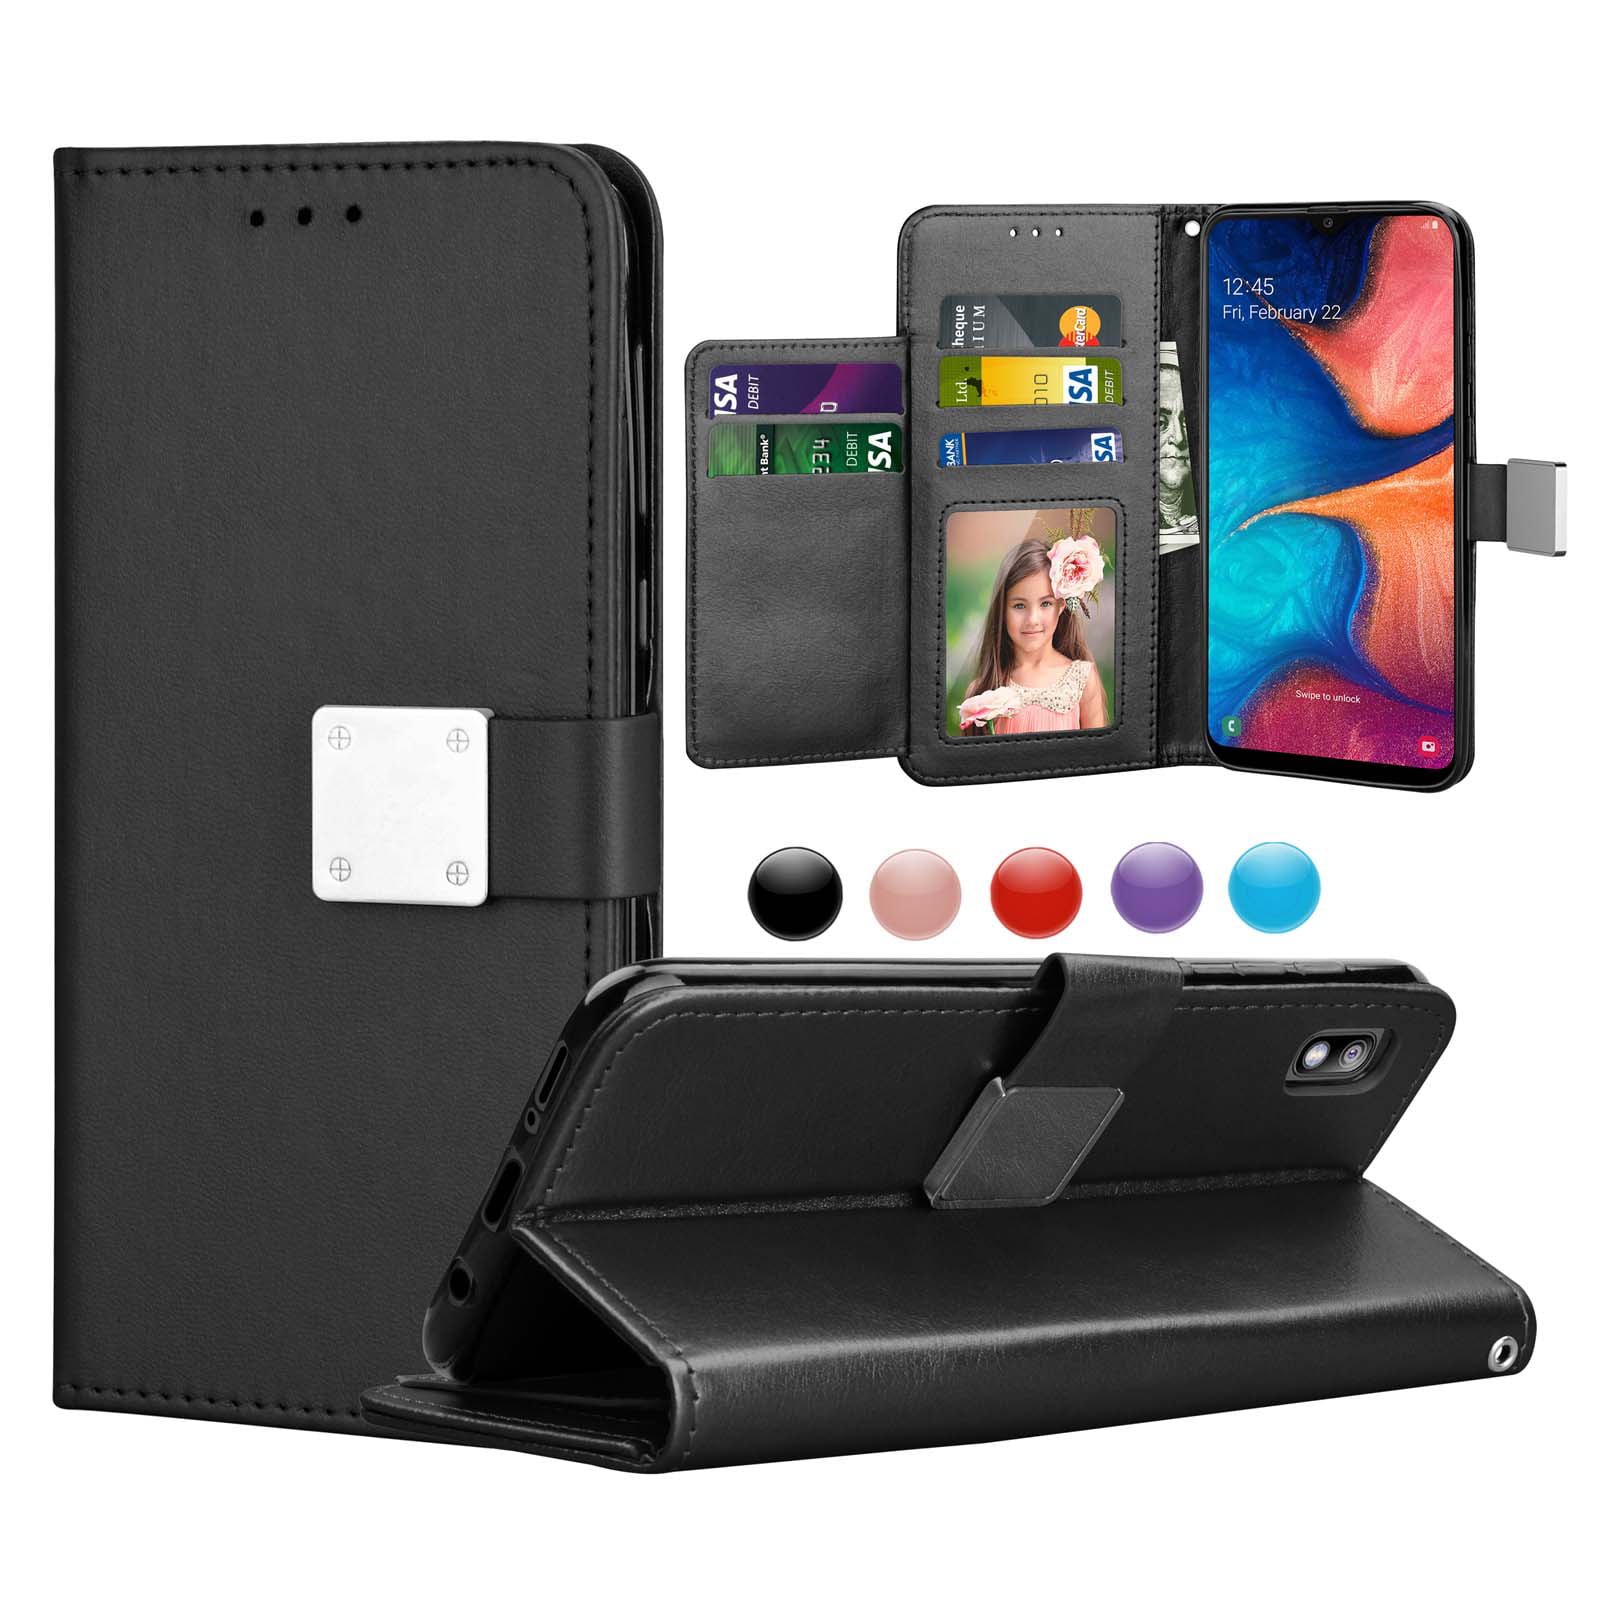 Galaxy A10E Case,A10e Case,Phone Case for Samsung A10e,Mirror Wallet Protector Credit Card Holder Case with Wrist Strap